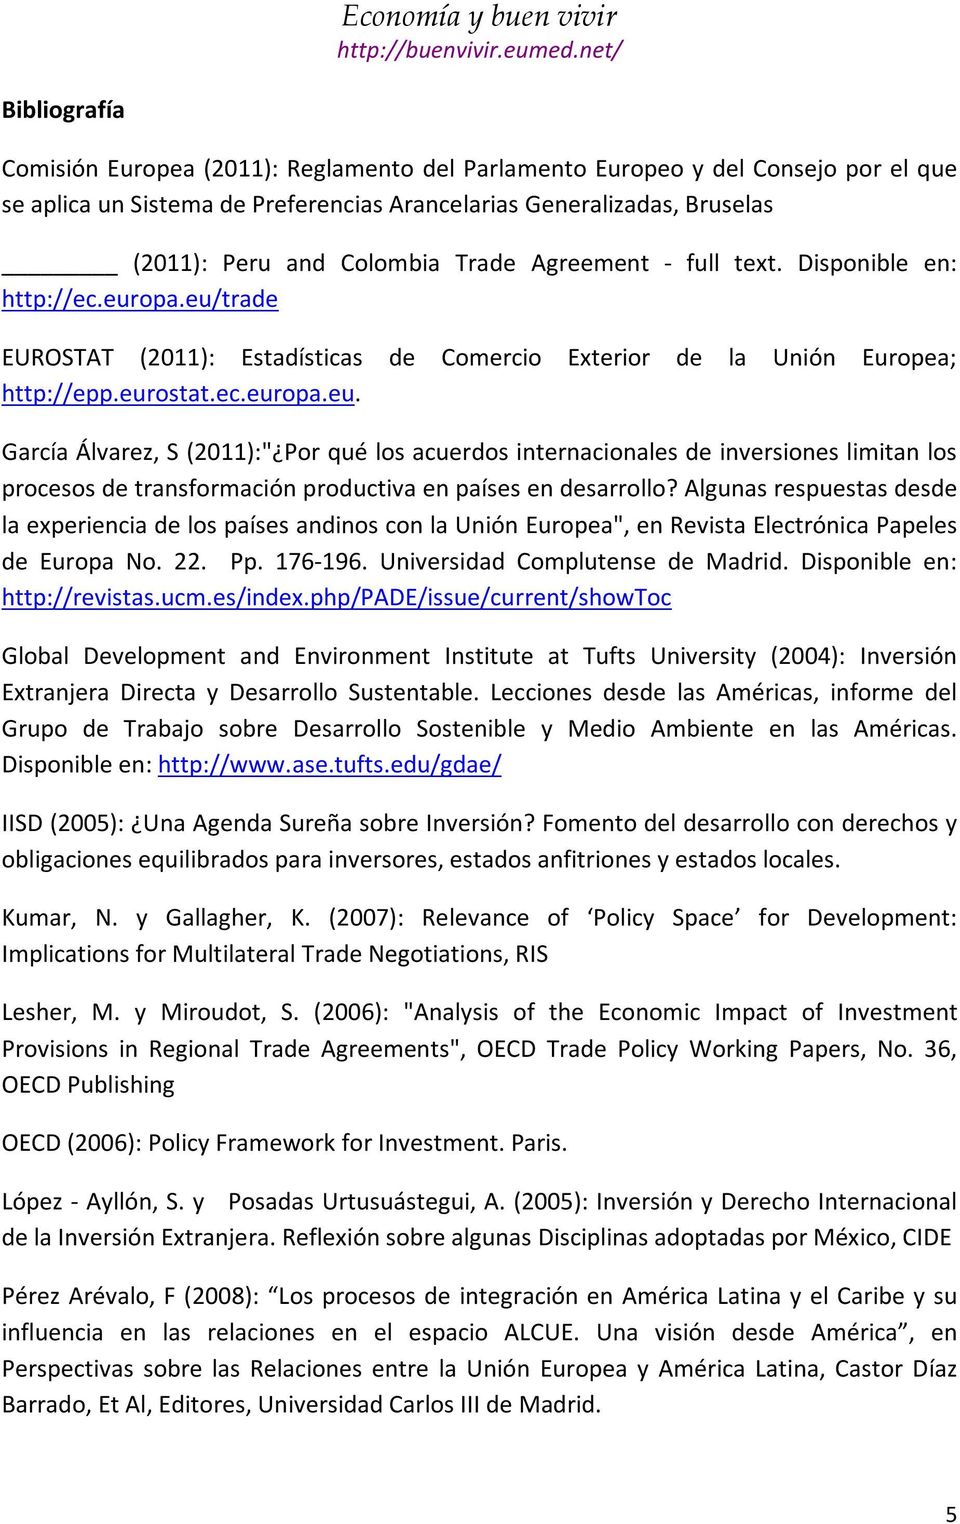 opa.eu/trade EUROSTAT (2011): Estadísticas de Comercio Exterior de la Unión Europea; http://epp.eurostat.ec.europa.eu. García Álvarez, S (2011):" Por qué los acuerdos internacionales de inversiones limitan los procesos de transformación productiva en países en desarrollo?